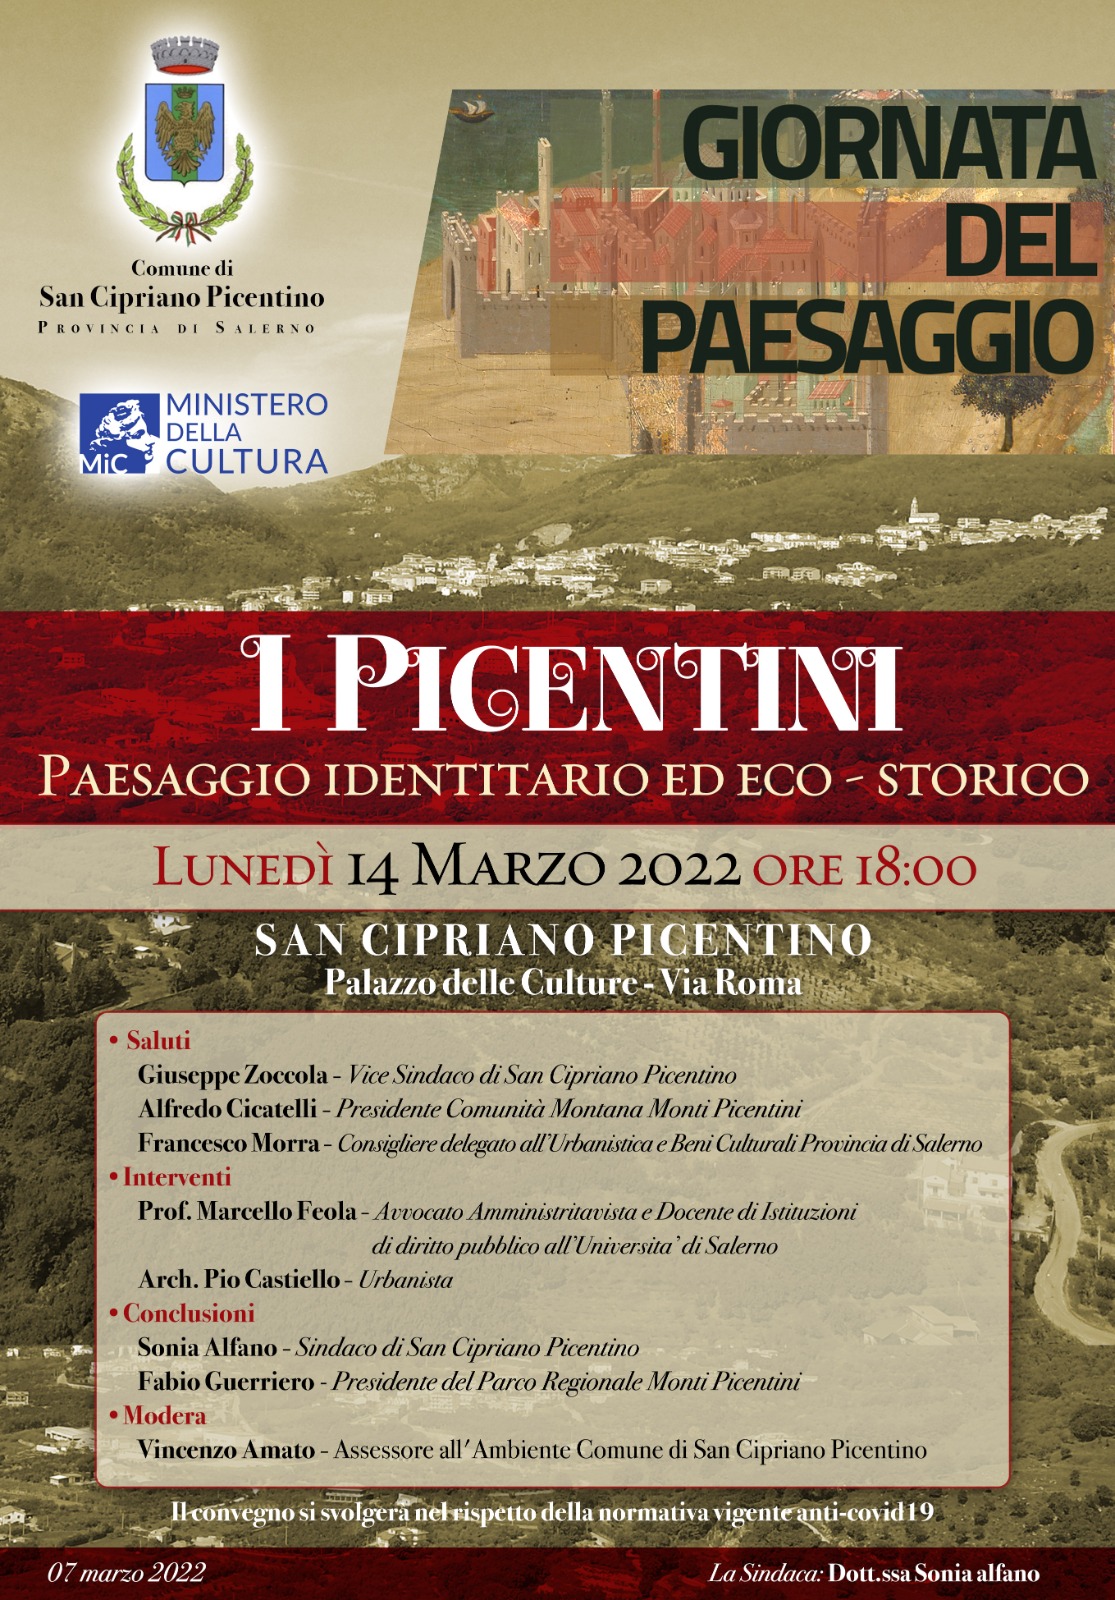 San Cipriano Picentino: Giornata del paesaggio, Sindaca Alfano “Convegno su Picentini per esaltare bellezza naturalistica”